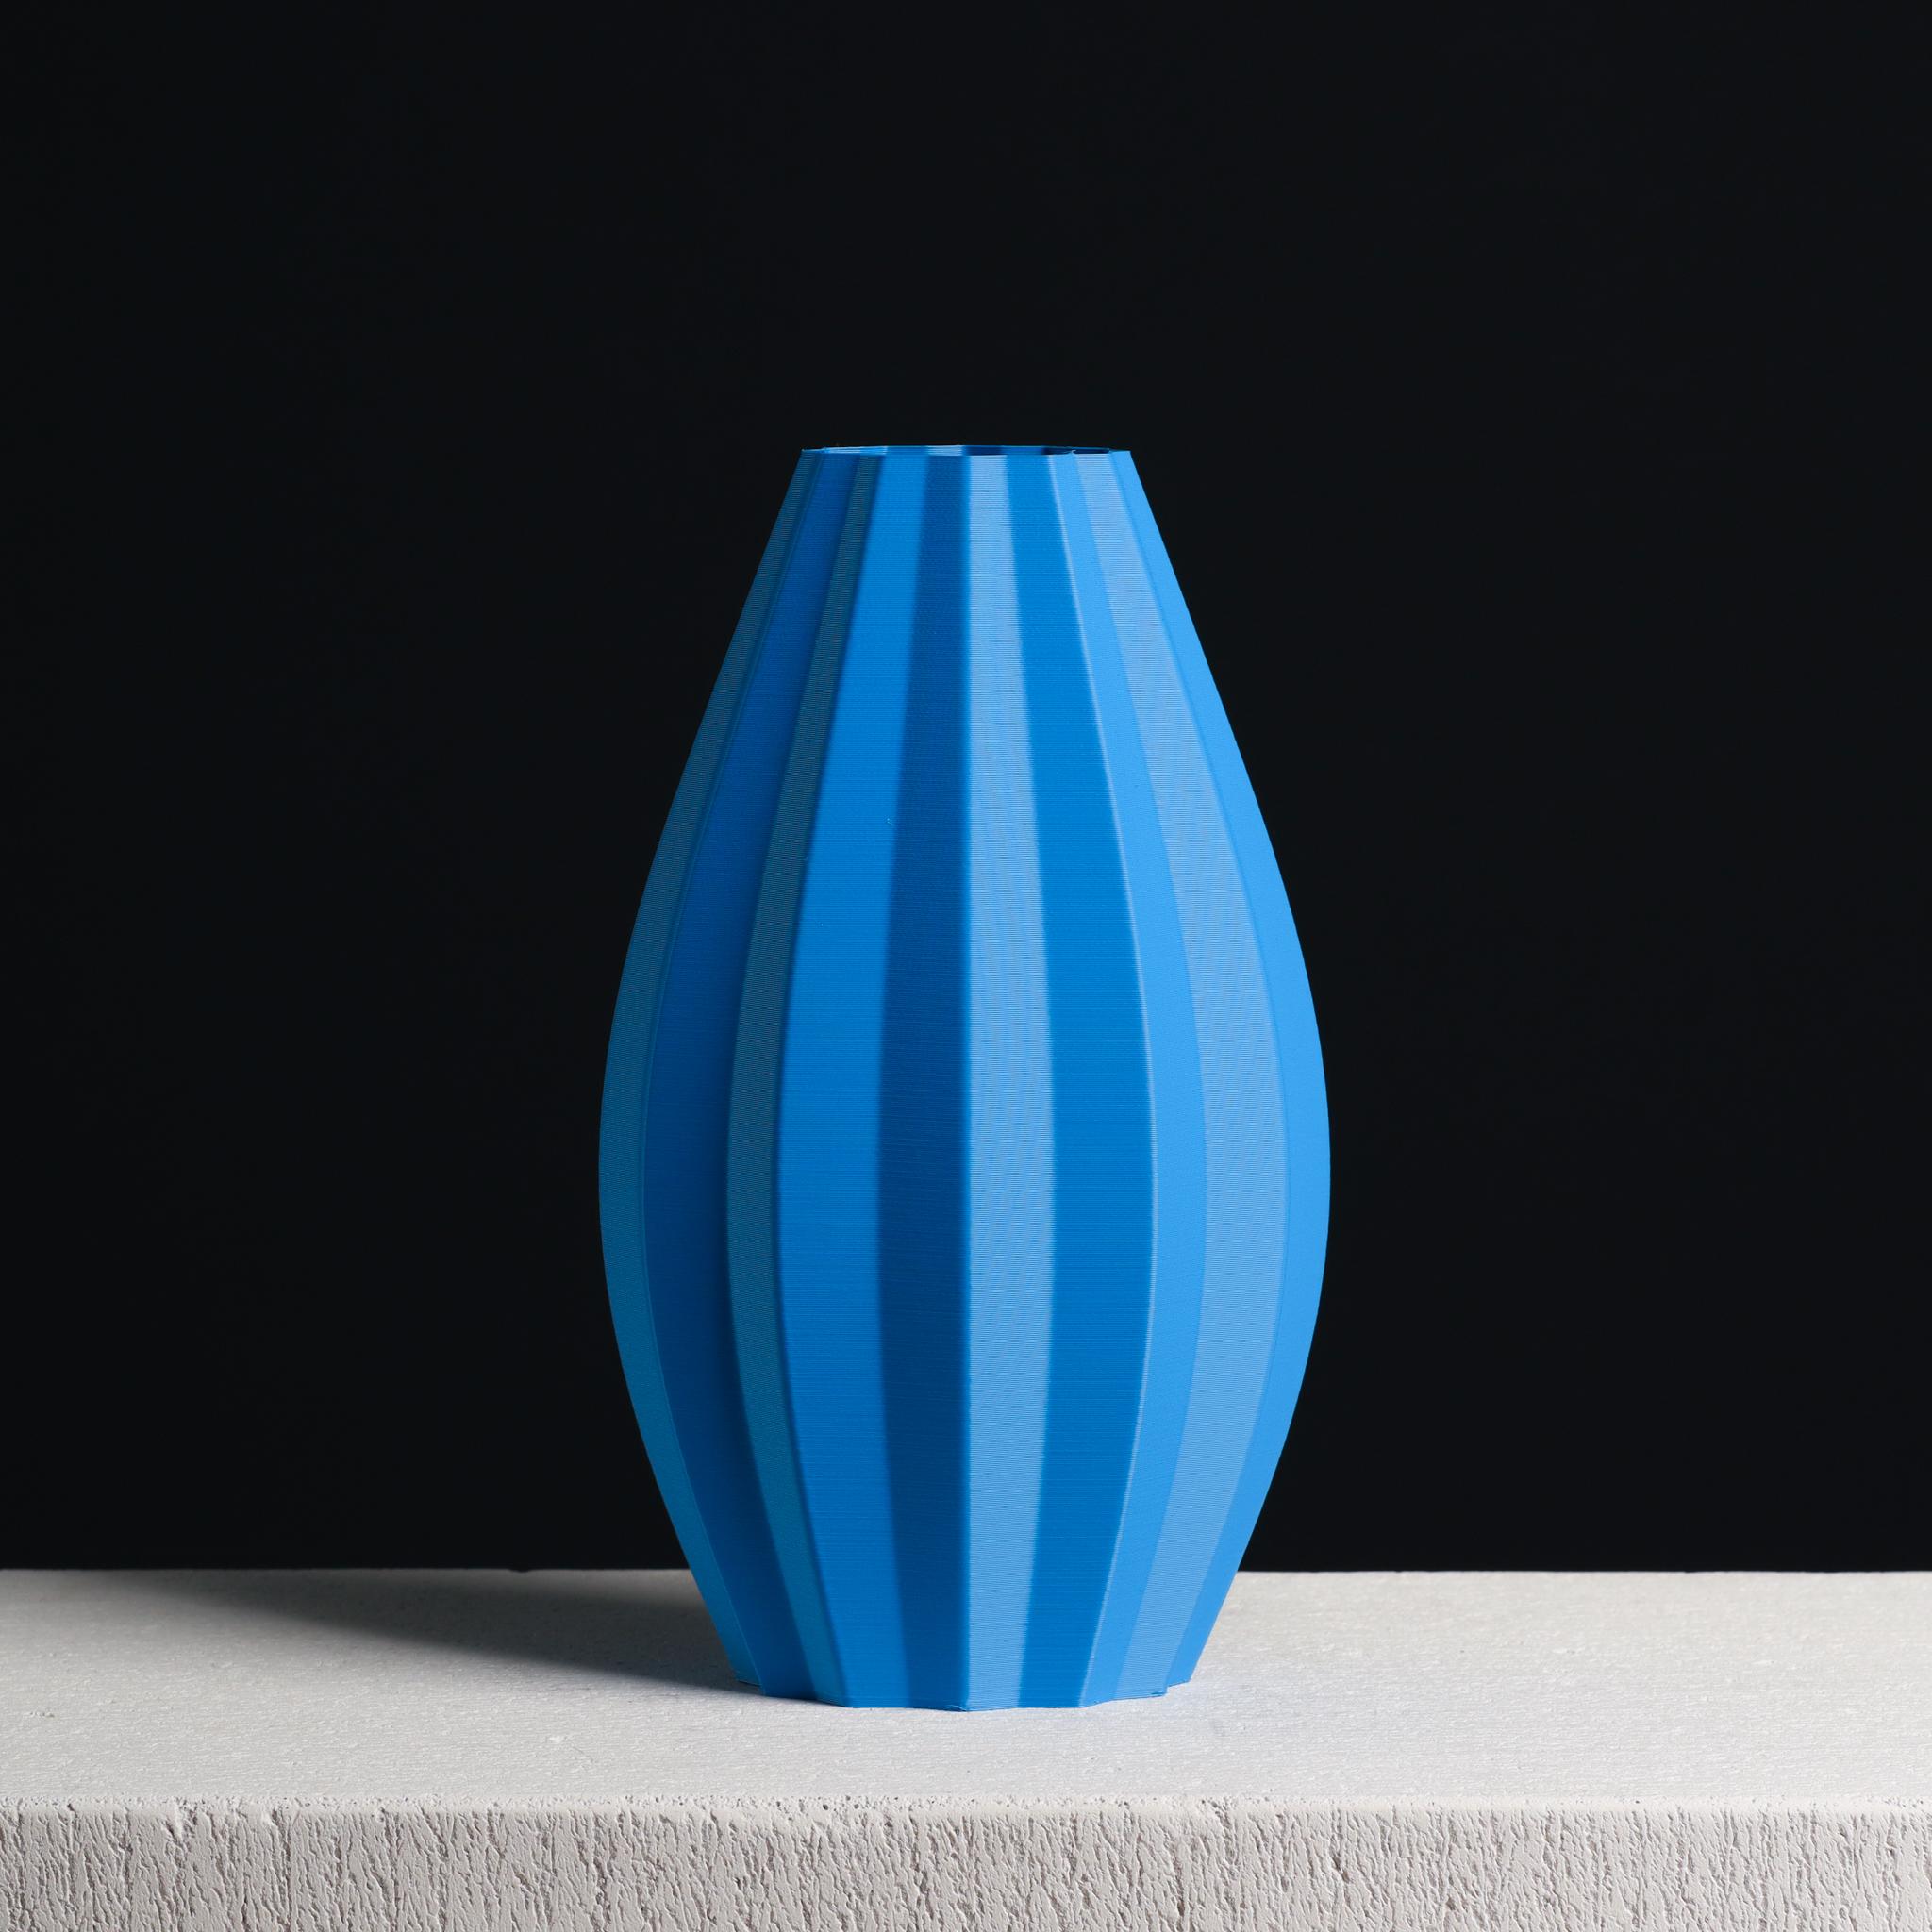  Ellipse Vase with Stripes  3d model